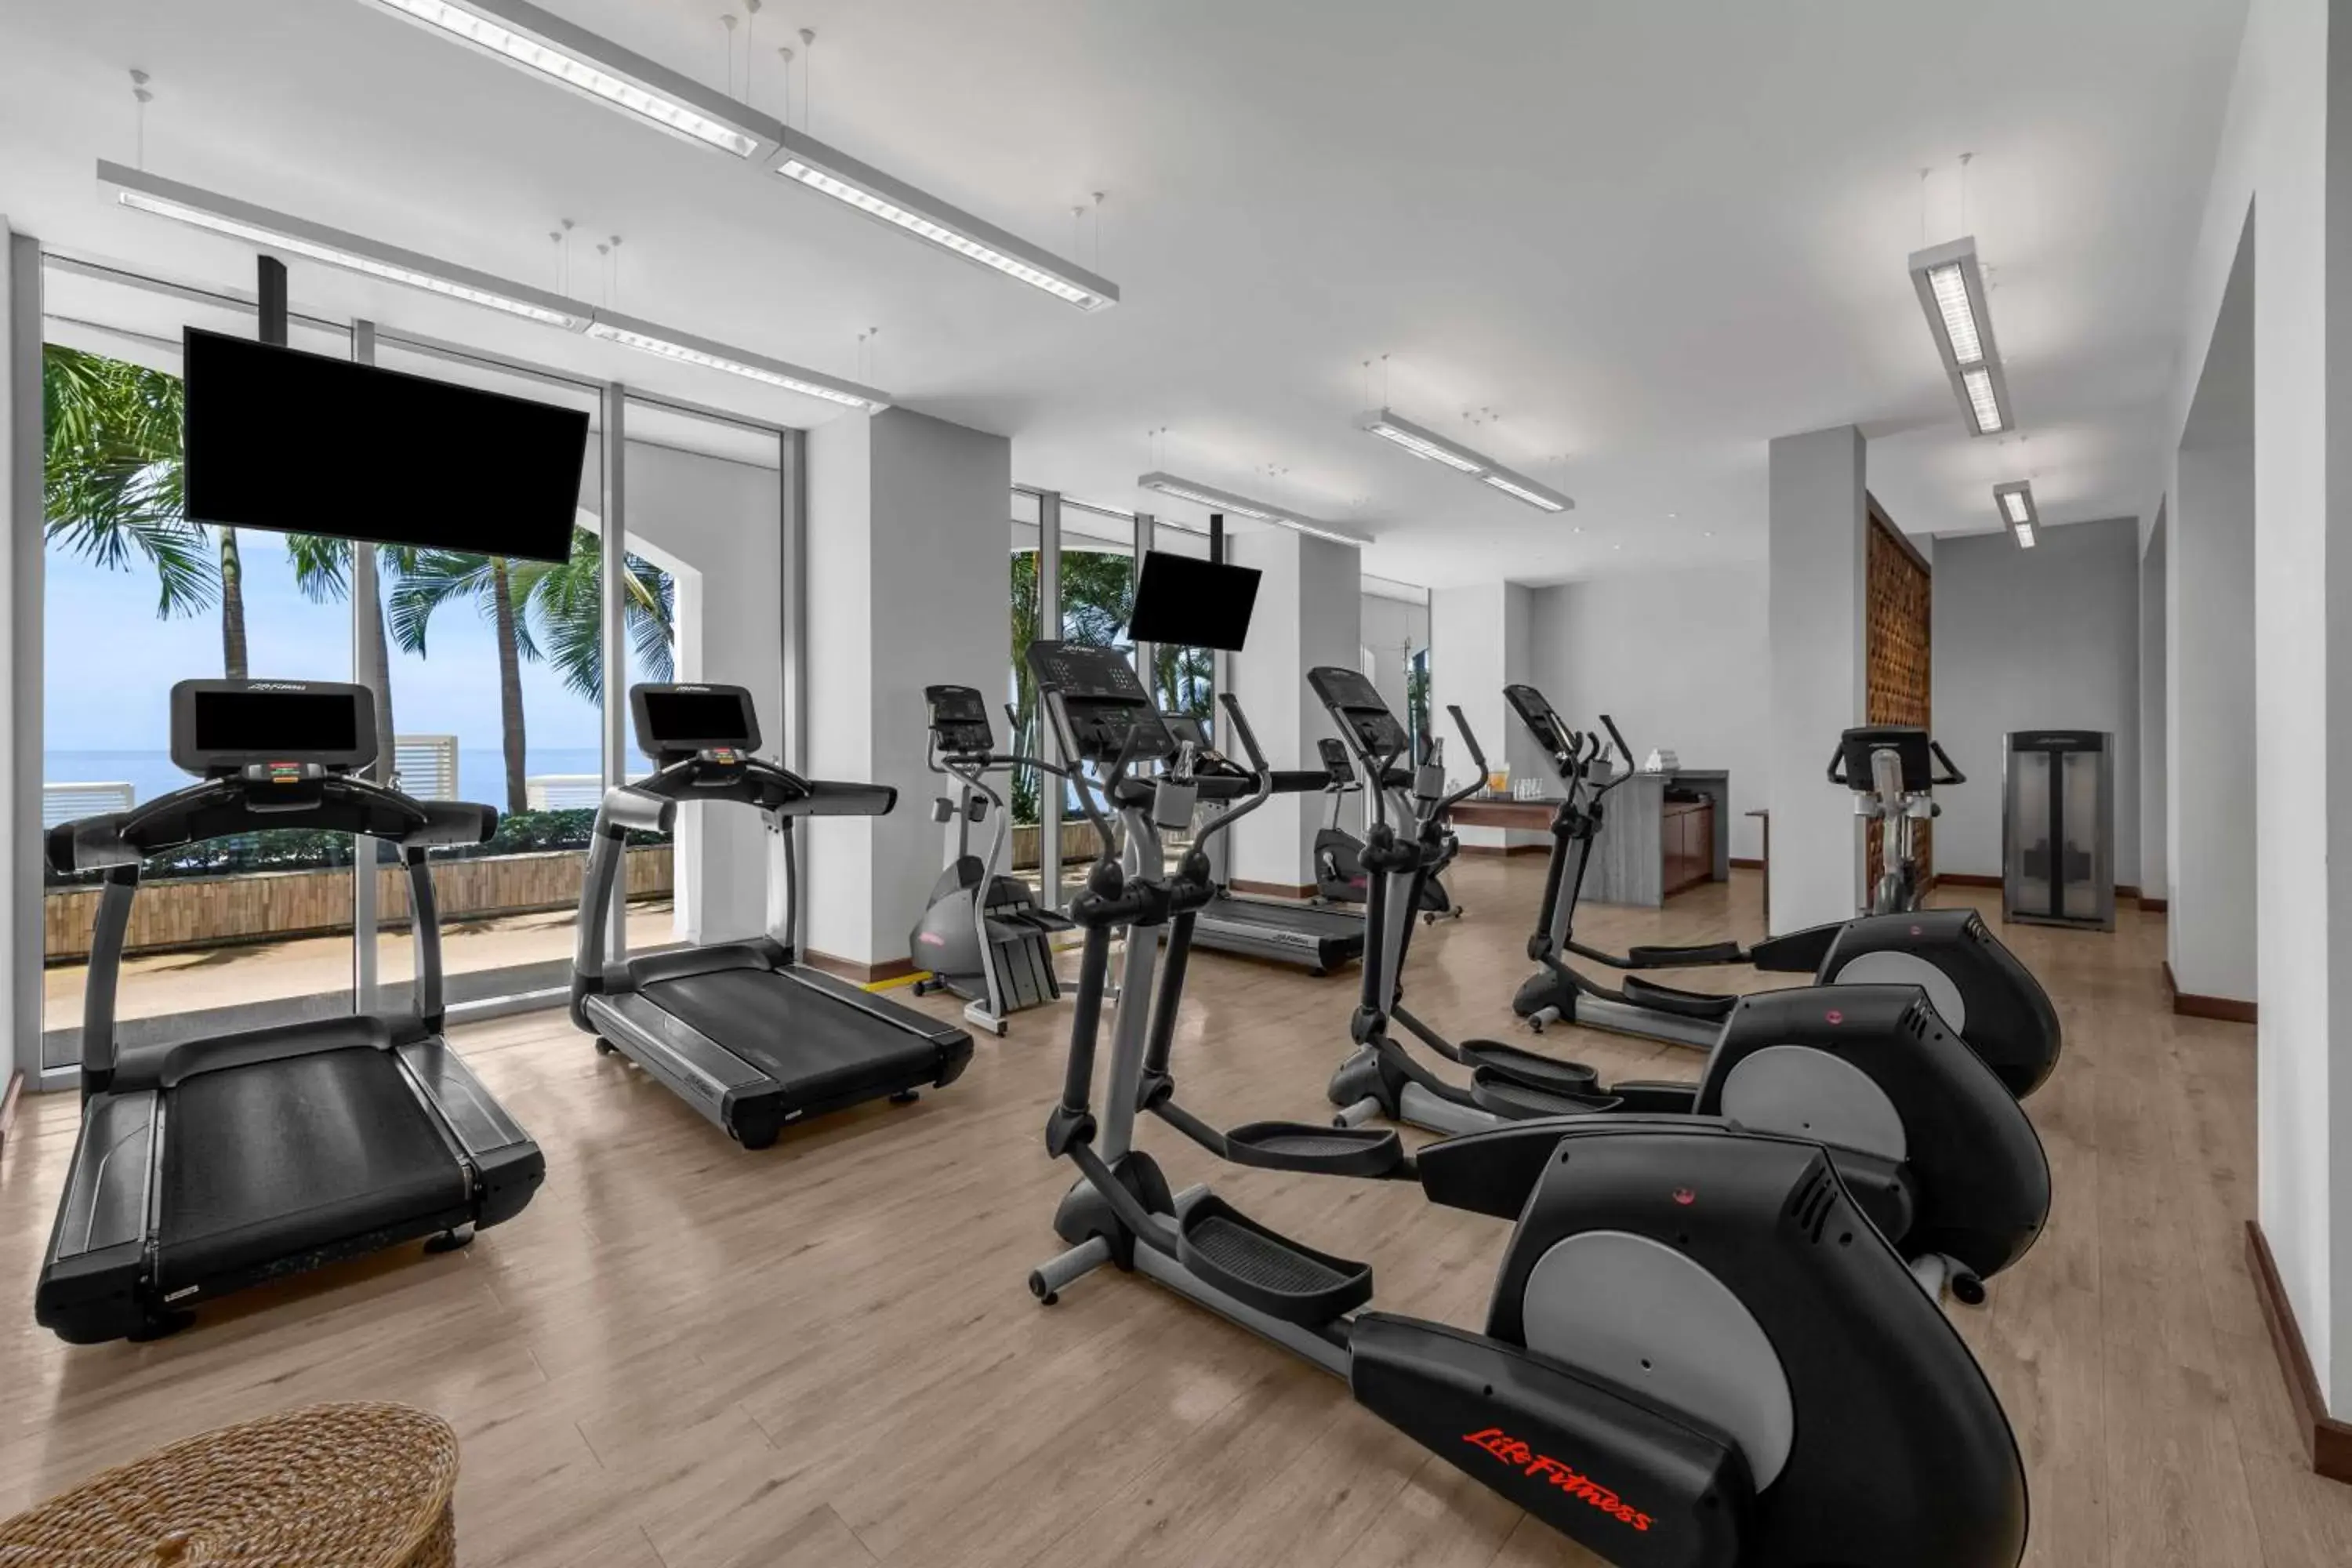 Fitness centre/facilities, Fitness Center/Facilities in Hilton Vallarta Riviera All-Inclusive Resort,Puerto Vallarta